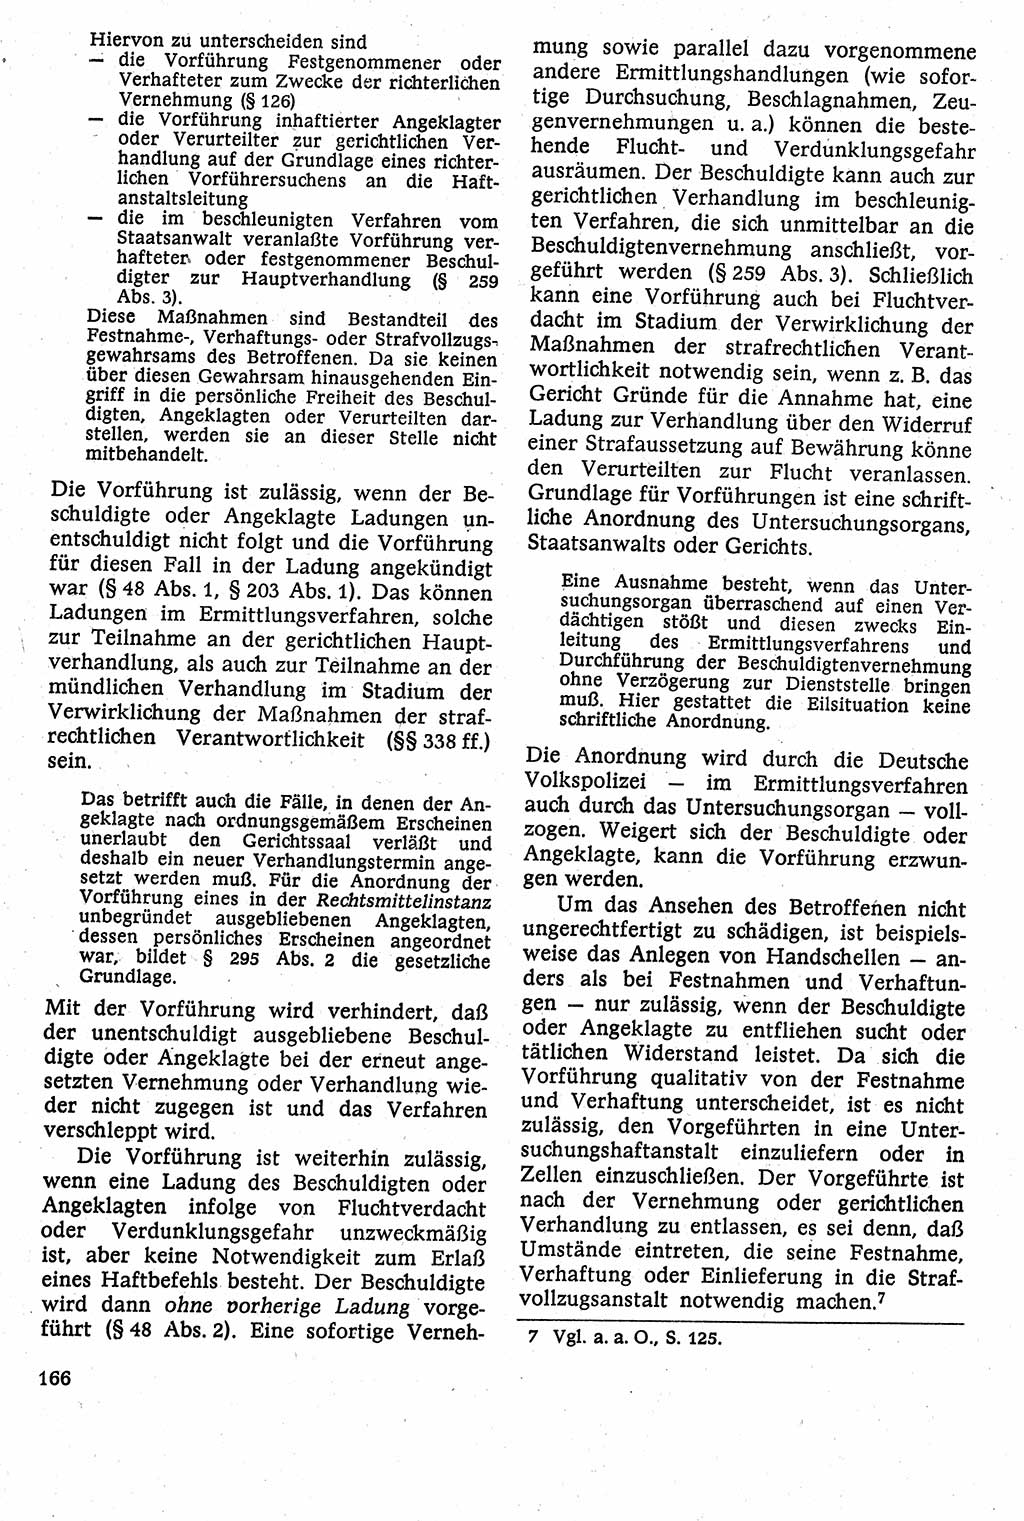 Strafverfahrensrecht [Deutsche Demokratische Republik (DDR)], Lehrbuch 1982, Seite 166 (Strafverf.-R. DDR Lb. 1982, S. 166)